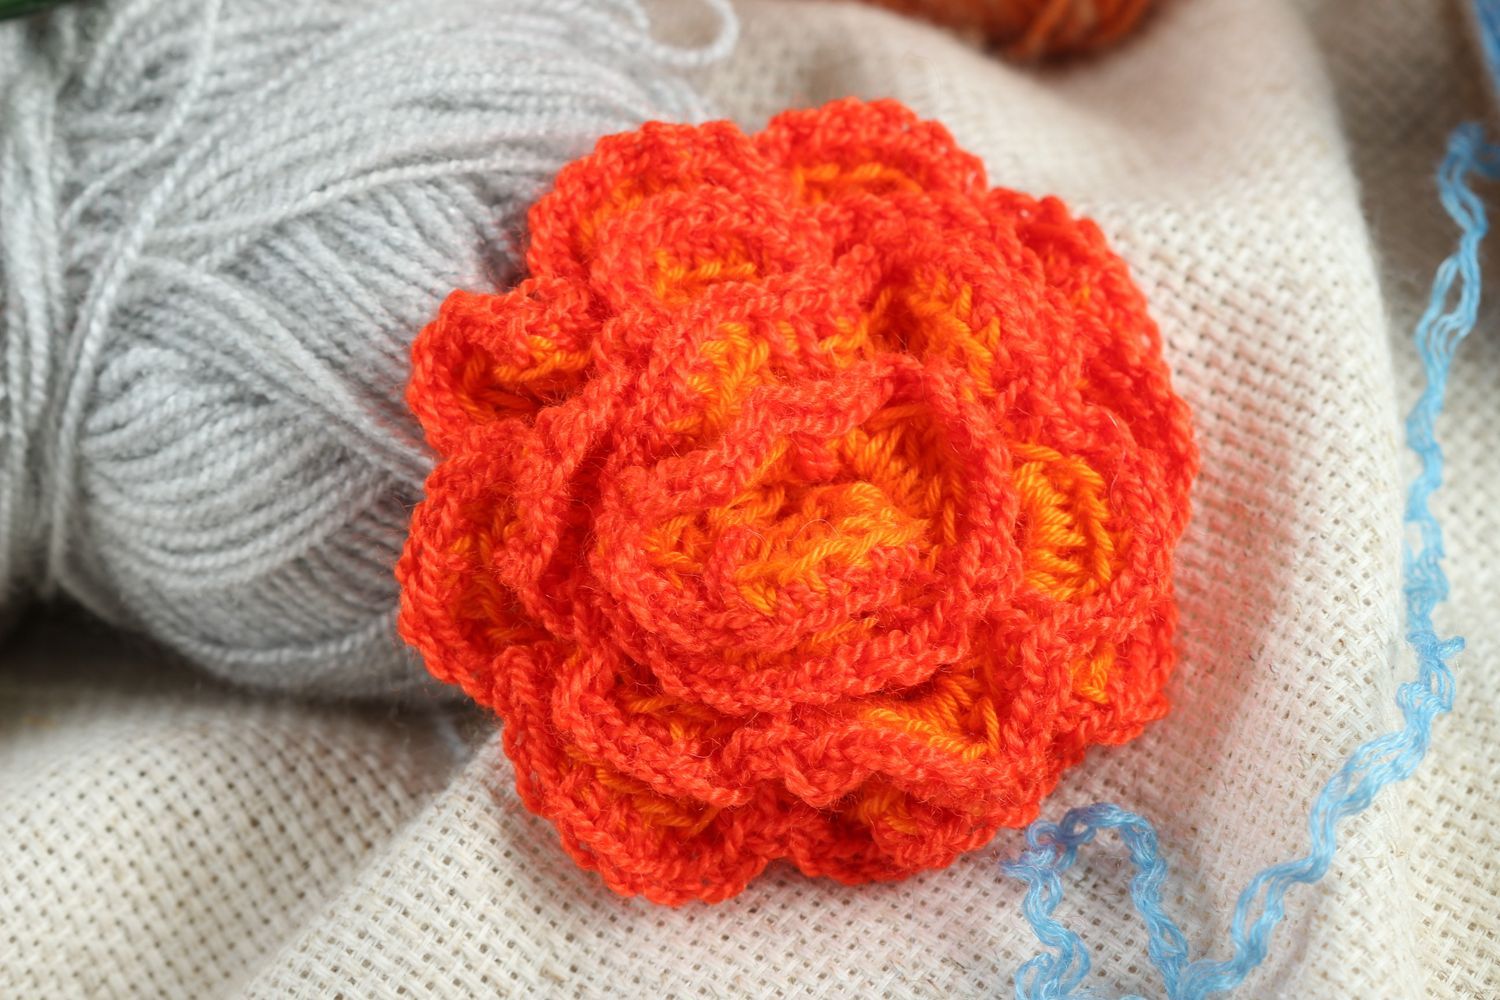 Handmade jewelry supplies crocheted flower crochet flower hair clips supplies photo 1